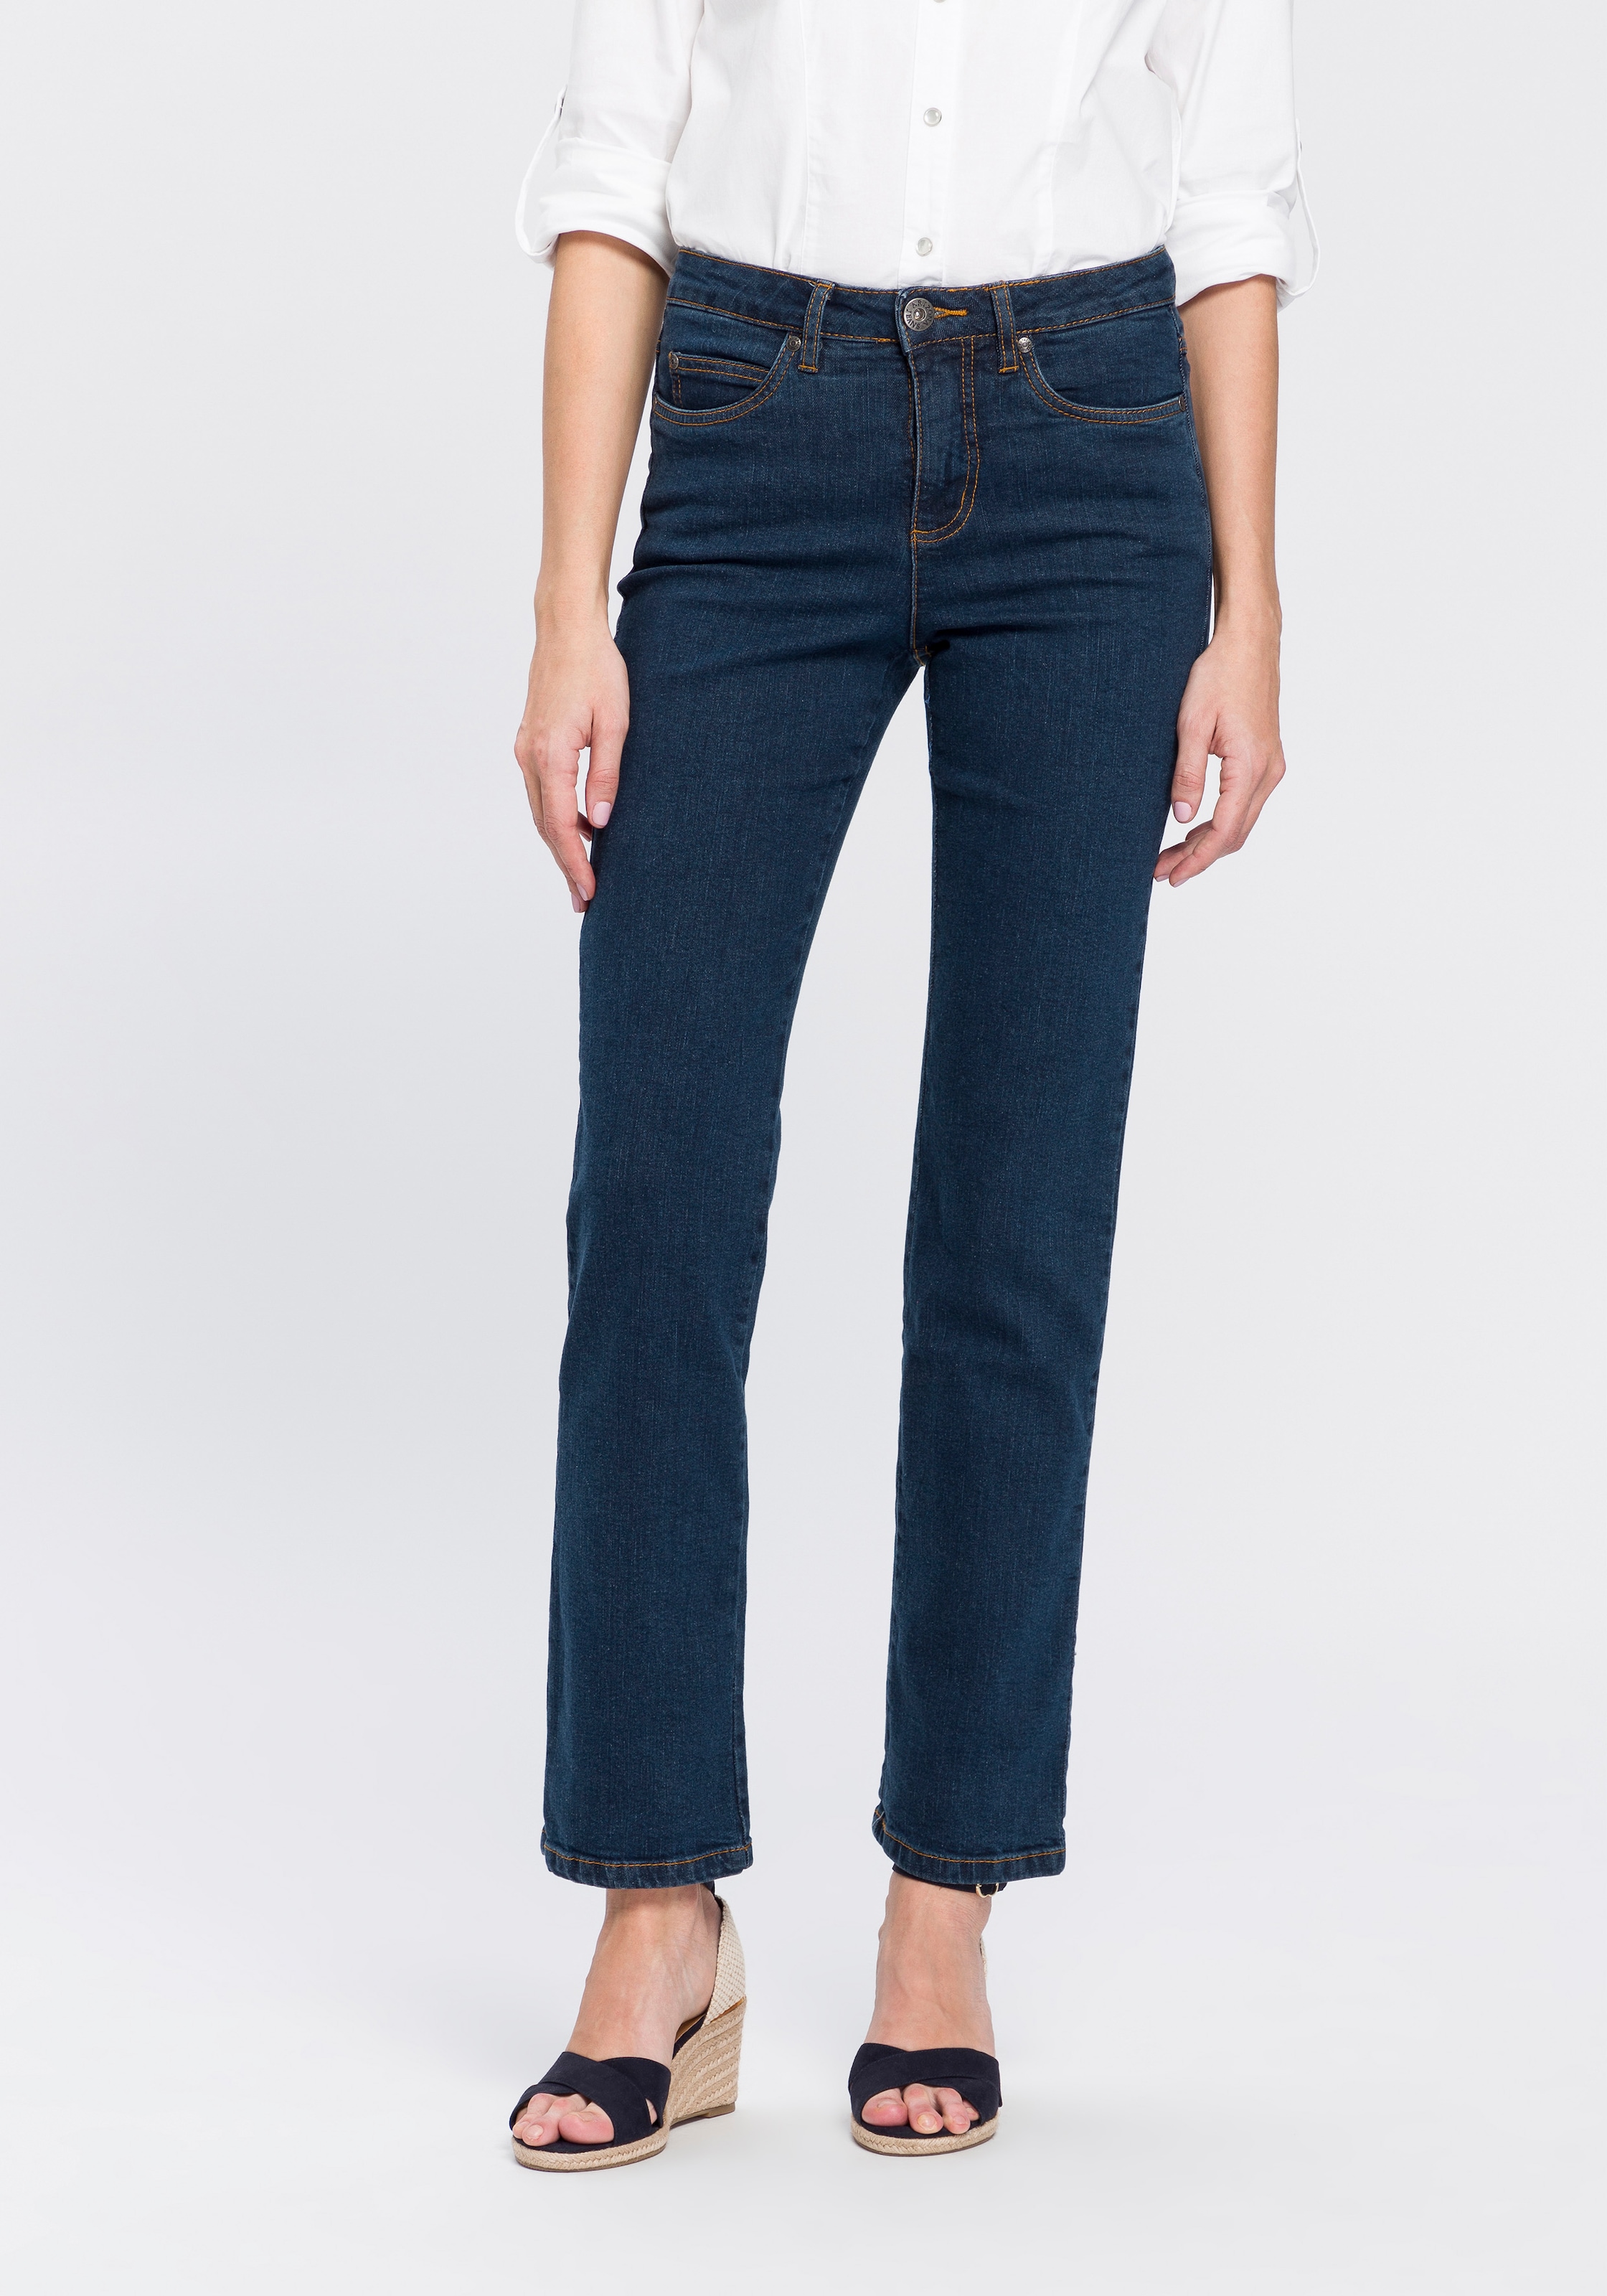 ♕ versandkostenfrei »Comfort-Fit«, High kaufen Waist Arizona Gerade Jeans